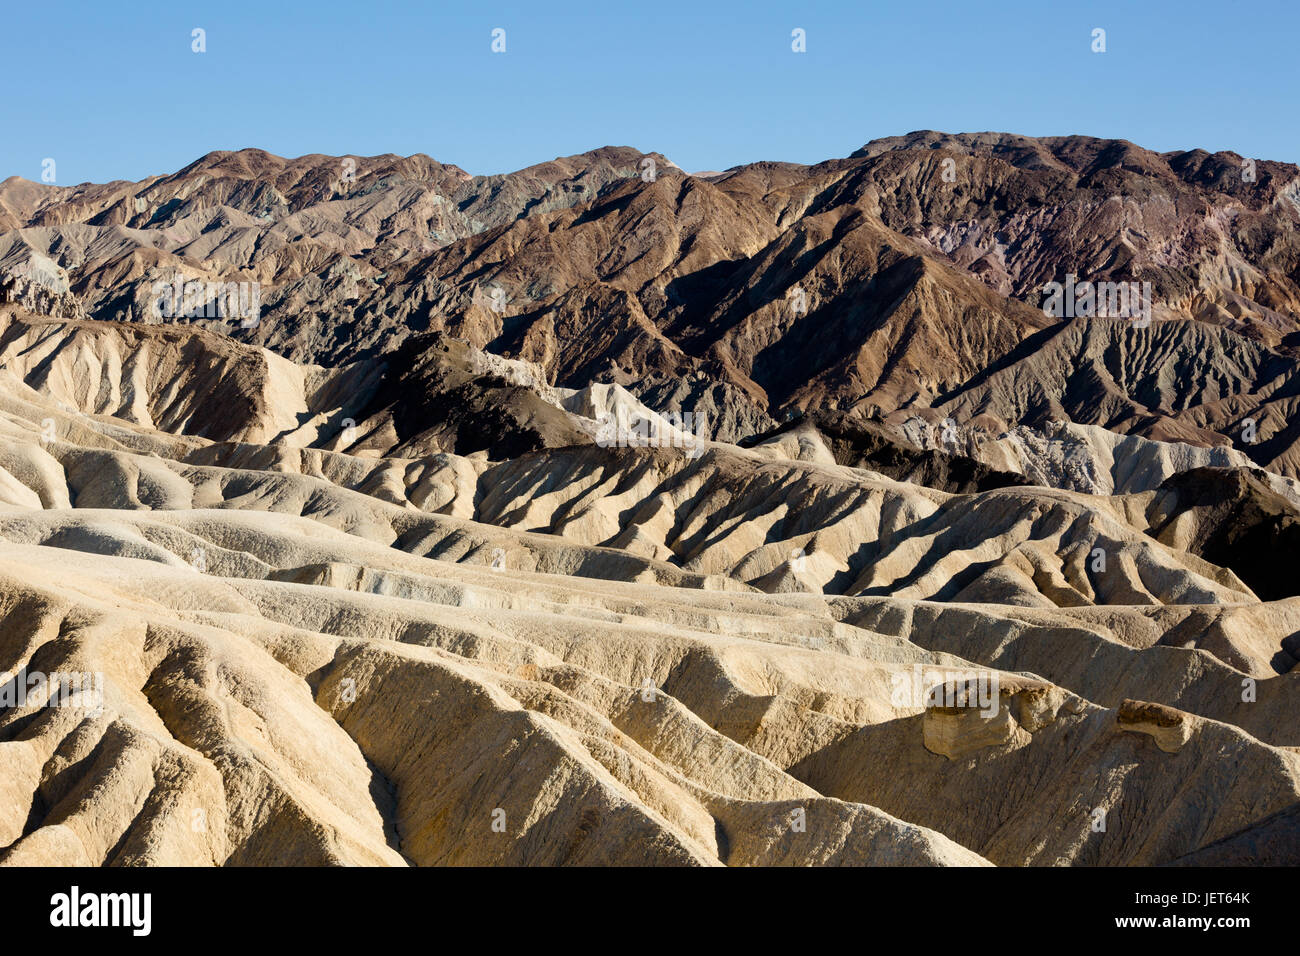 USA, Californie, la Vallée de la mort est une vallée désertique située dans l'est de la Californie. C'est la région la plus basse, la plus sèche et la plus chaude d'Amérique du Nord. Vue sur Zabriskie point. Banque D'Images